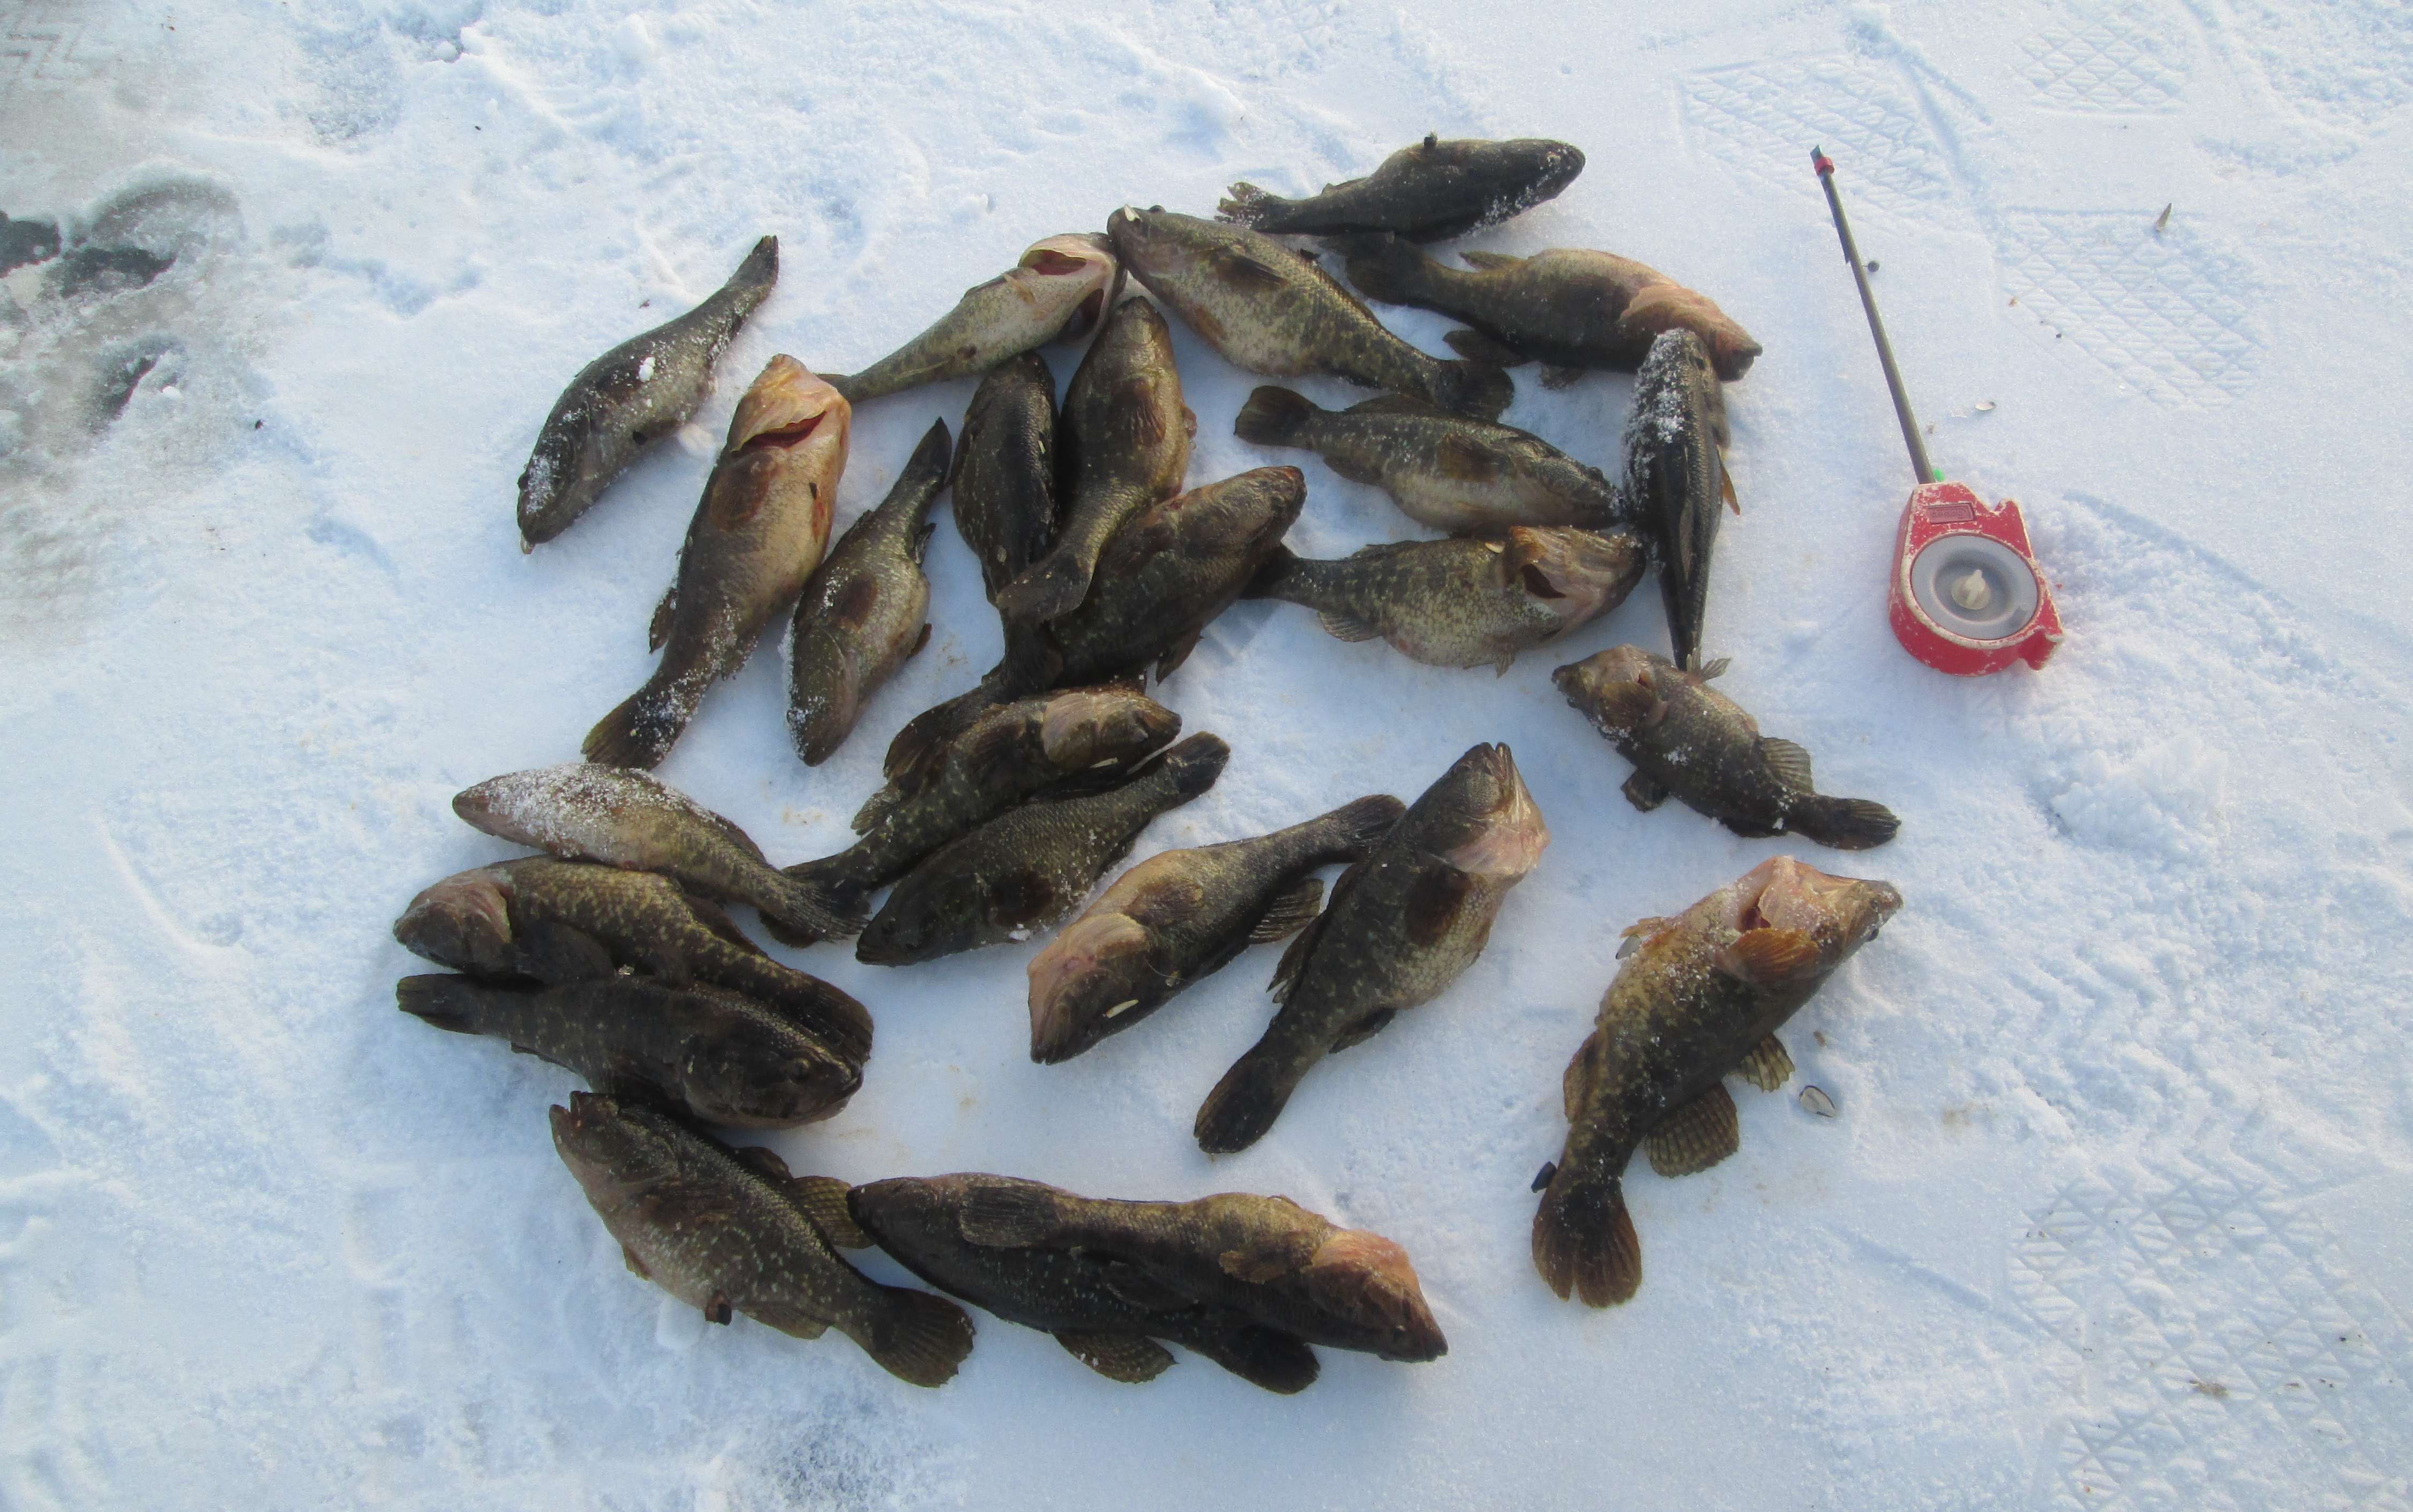 Ловля плотвы весной: в чем особенности сезона, основные секреты успешной рыбалки